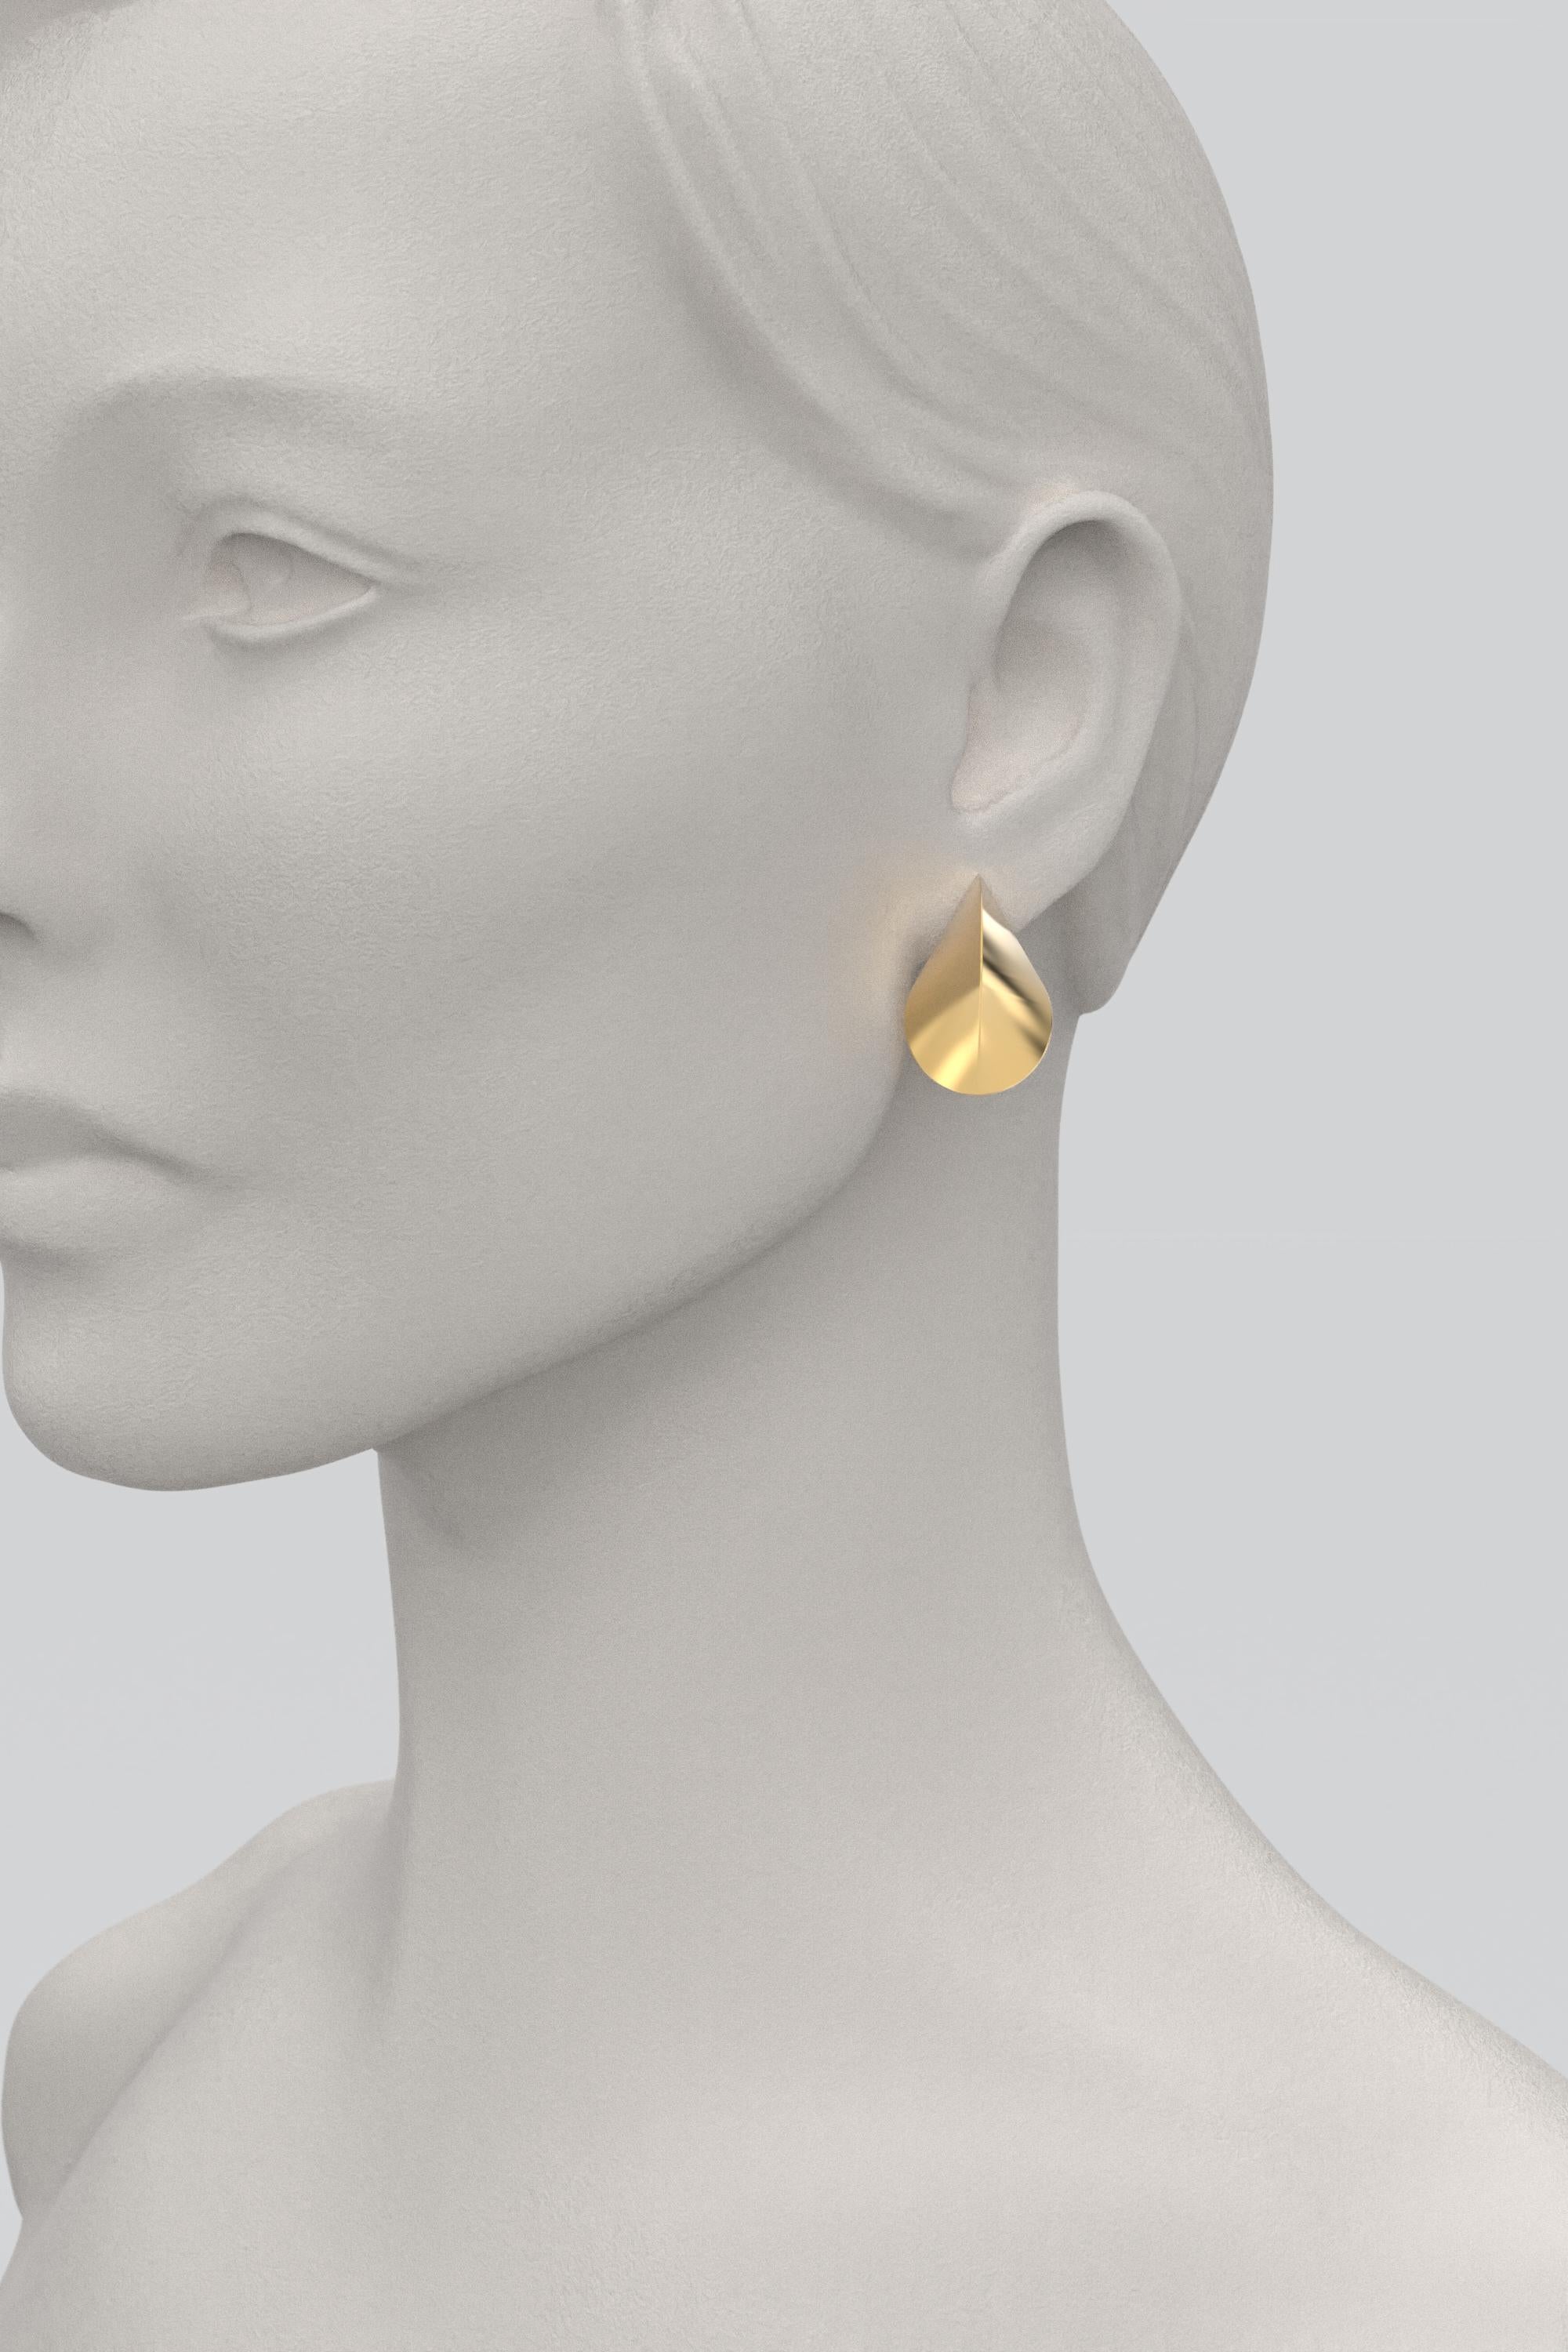 Italian 14k Gold Earrings, Modern Elegant Earrings by Oltremare Gioielli For Sale 2